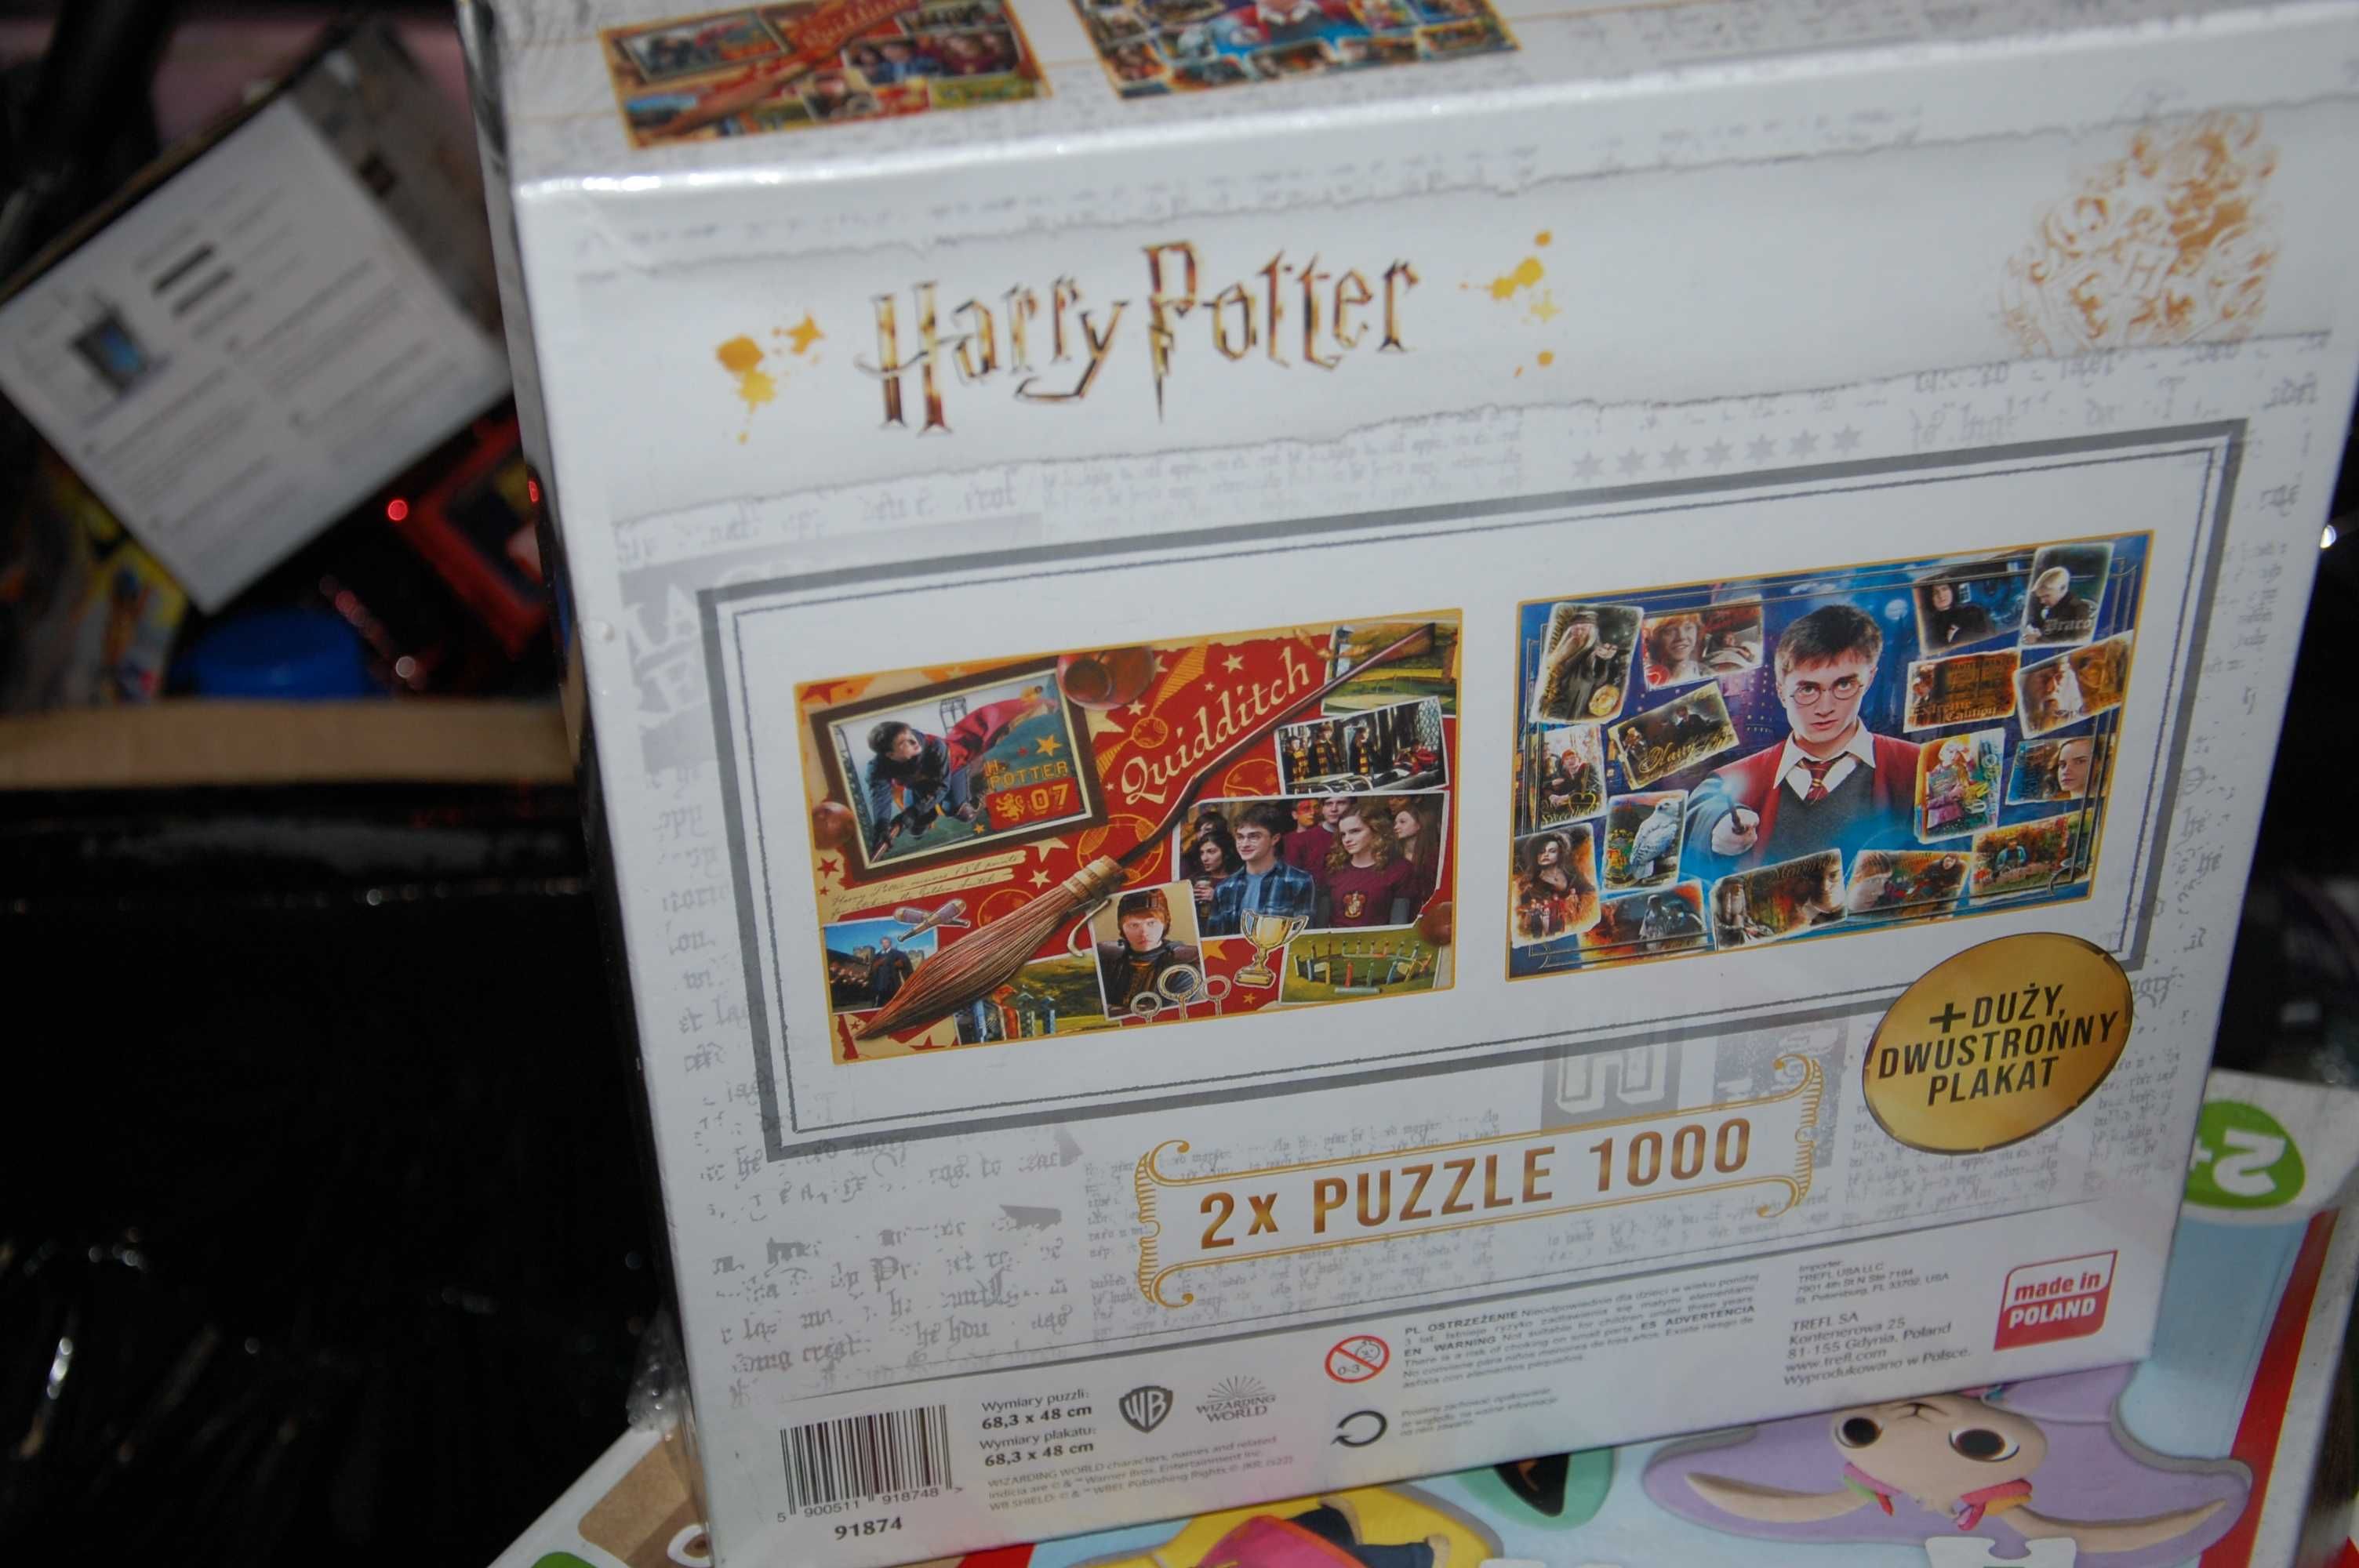 nowe puzzle HARRY POTTER 2x 1000 + plakat harry